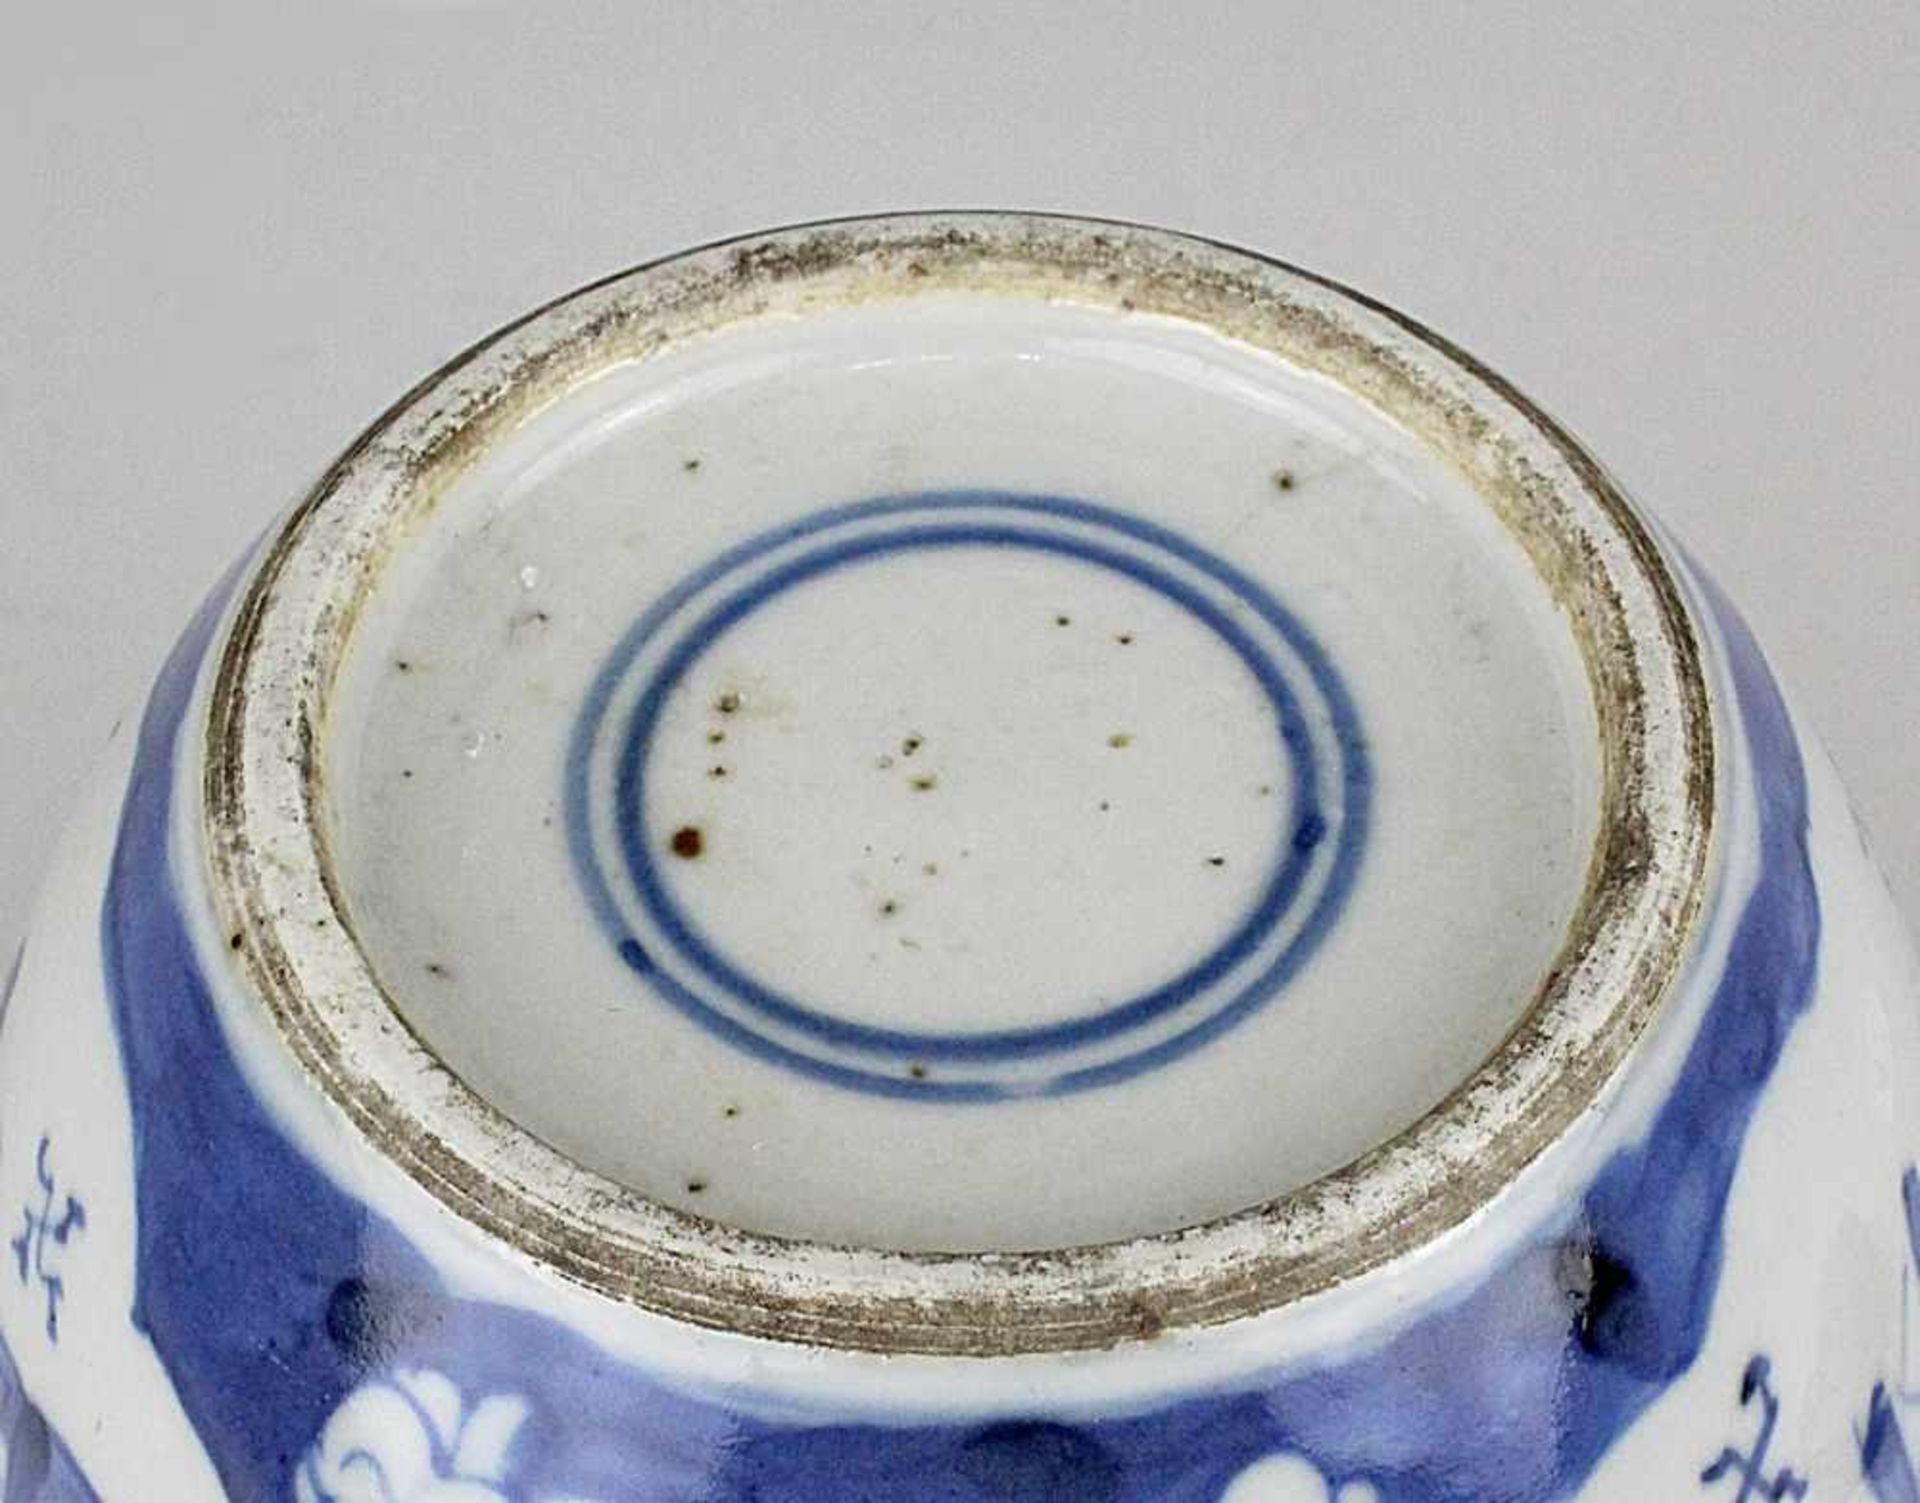 Schultertopf,China Kangxi 1654 - 1722. Porzellan mit hellblauem Scherben, unterglasur blau bemalt - Image 4 of 5